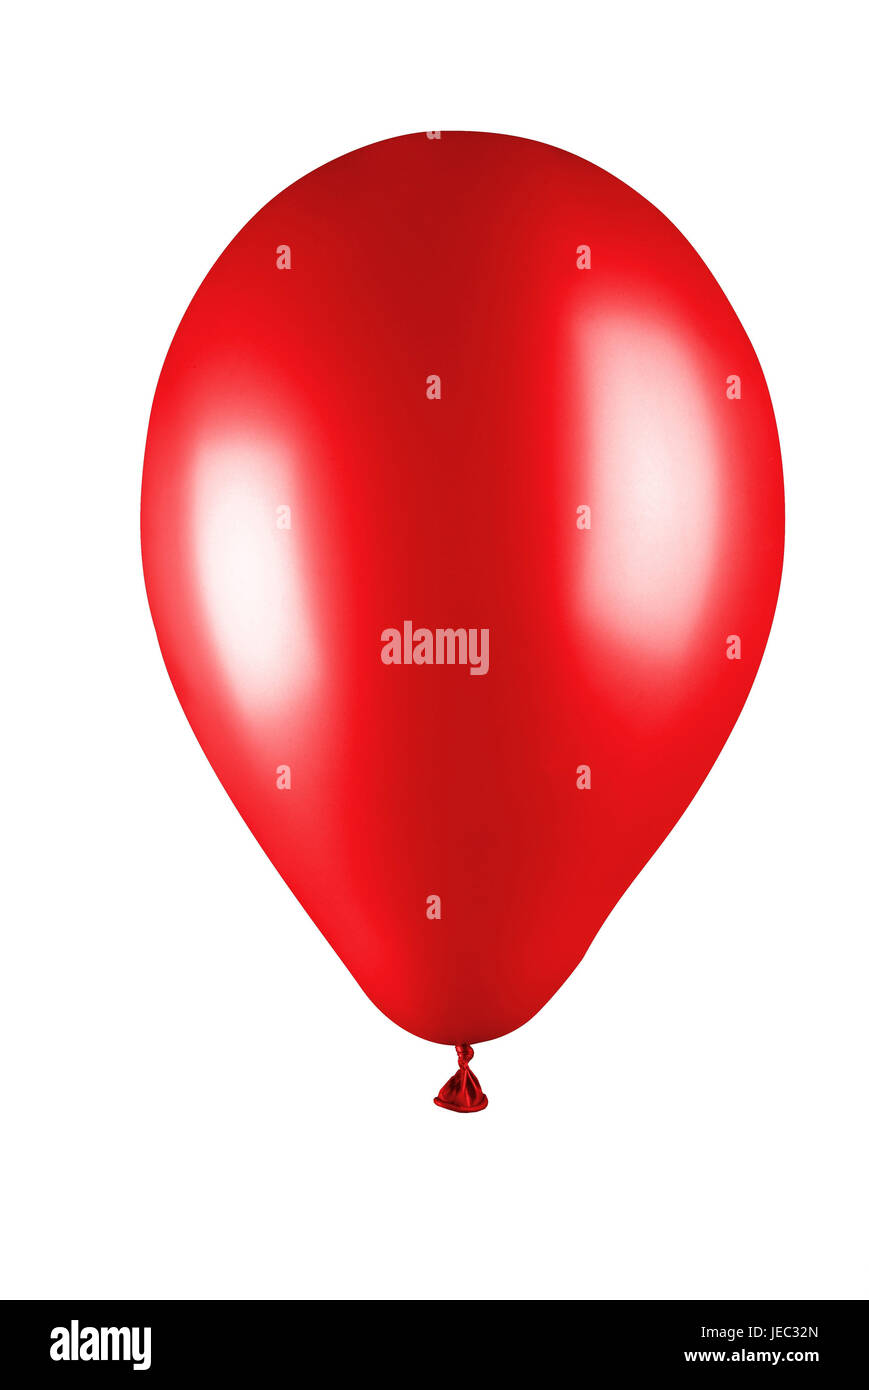 Balloon, Stock Photo